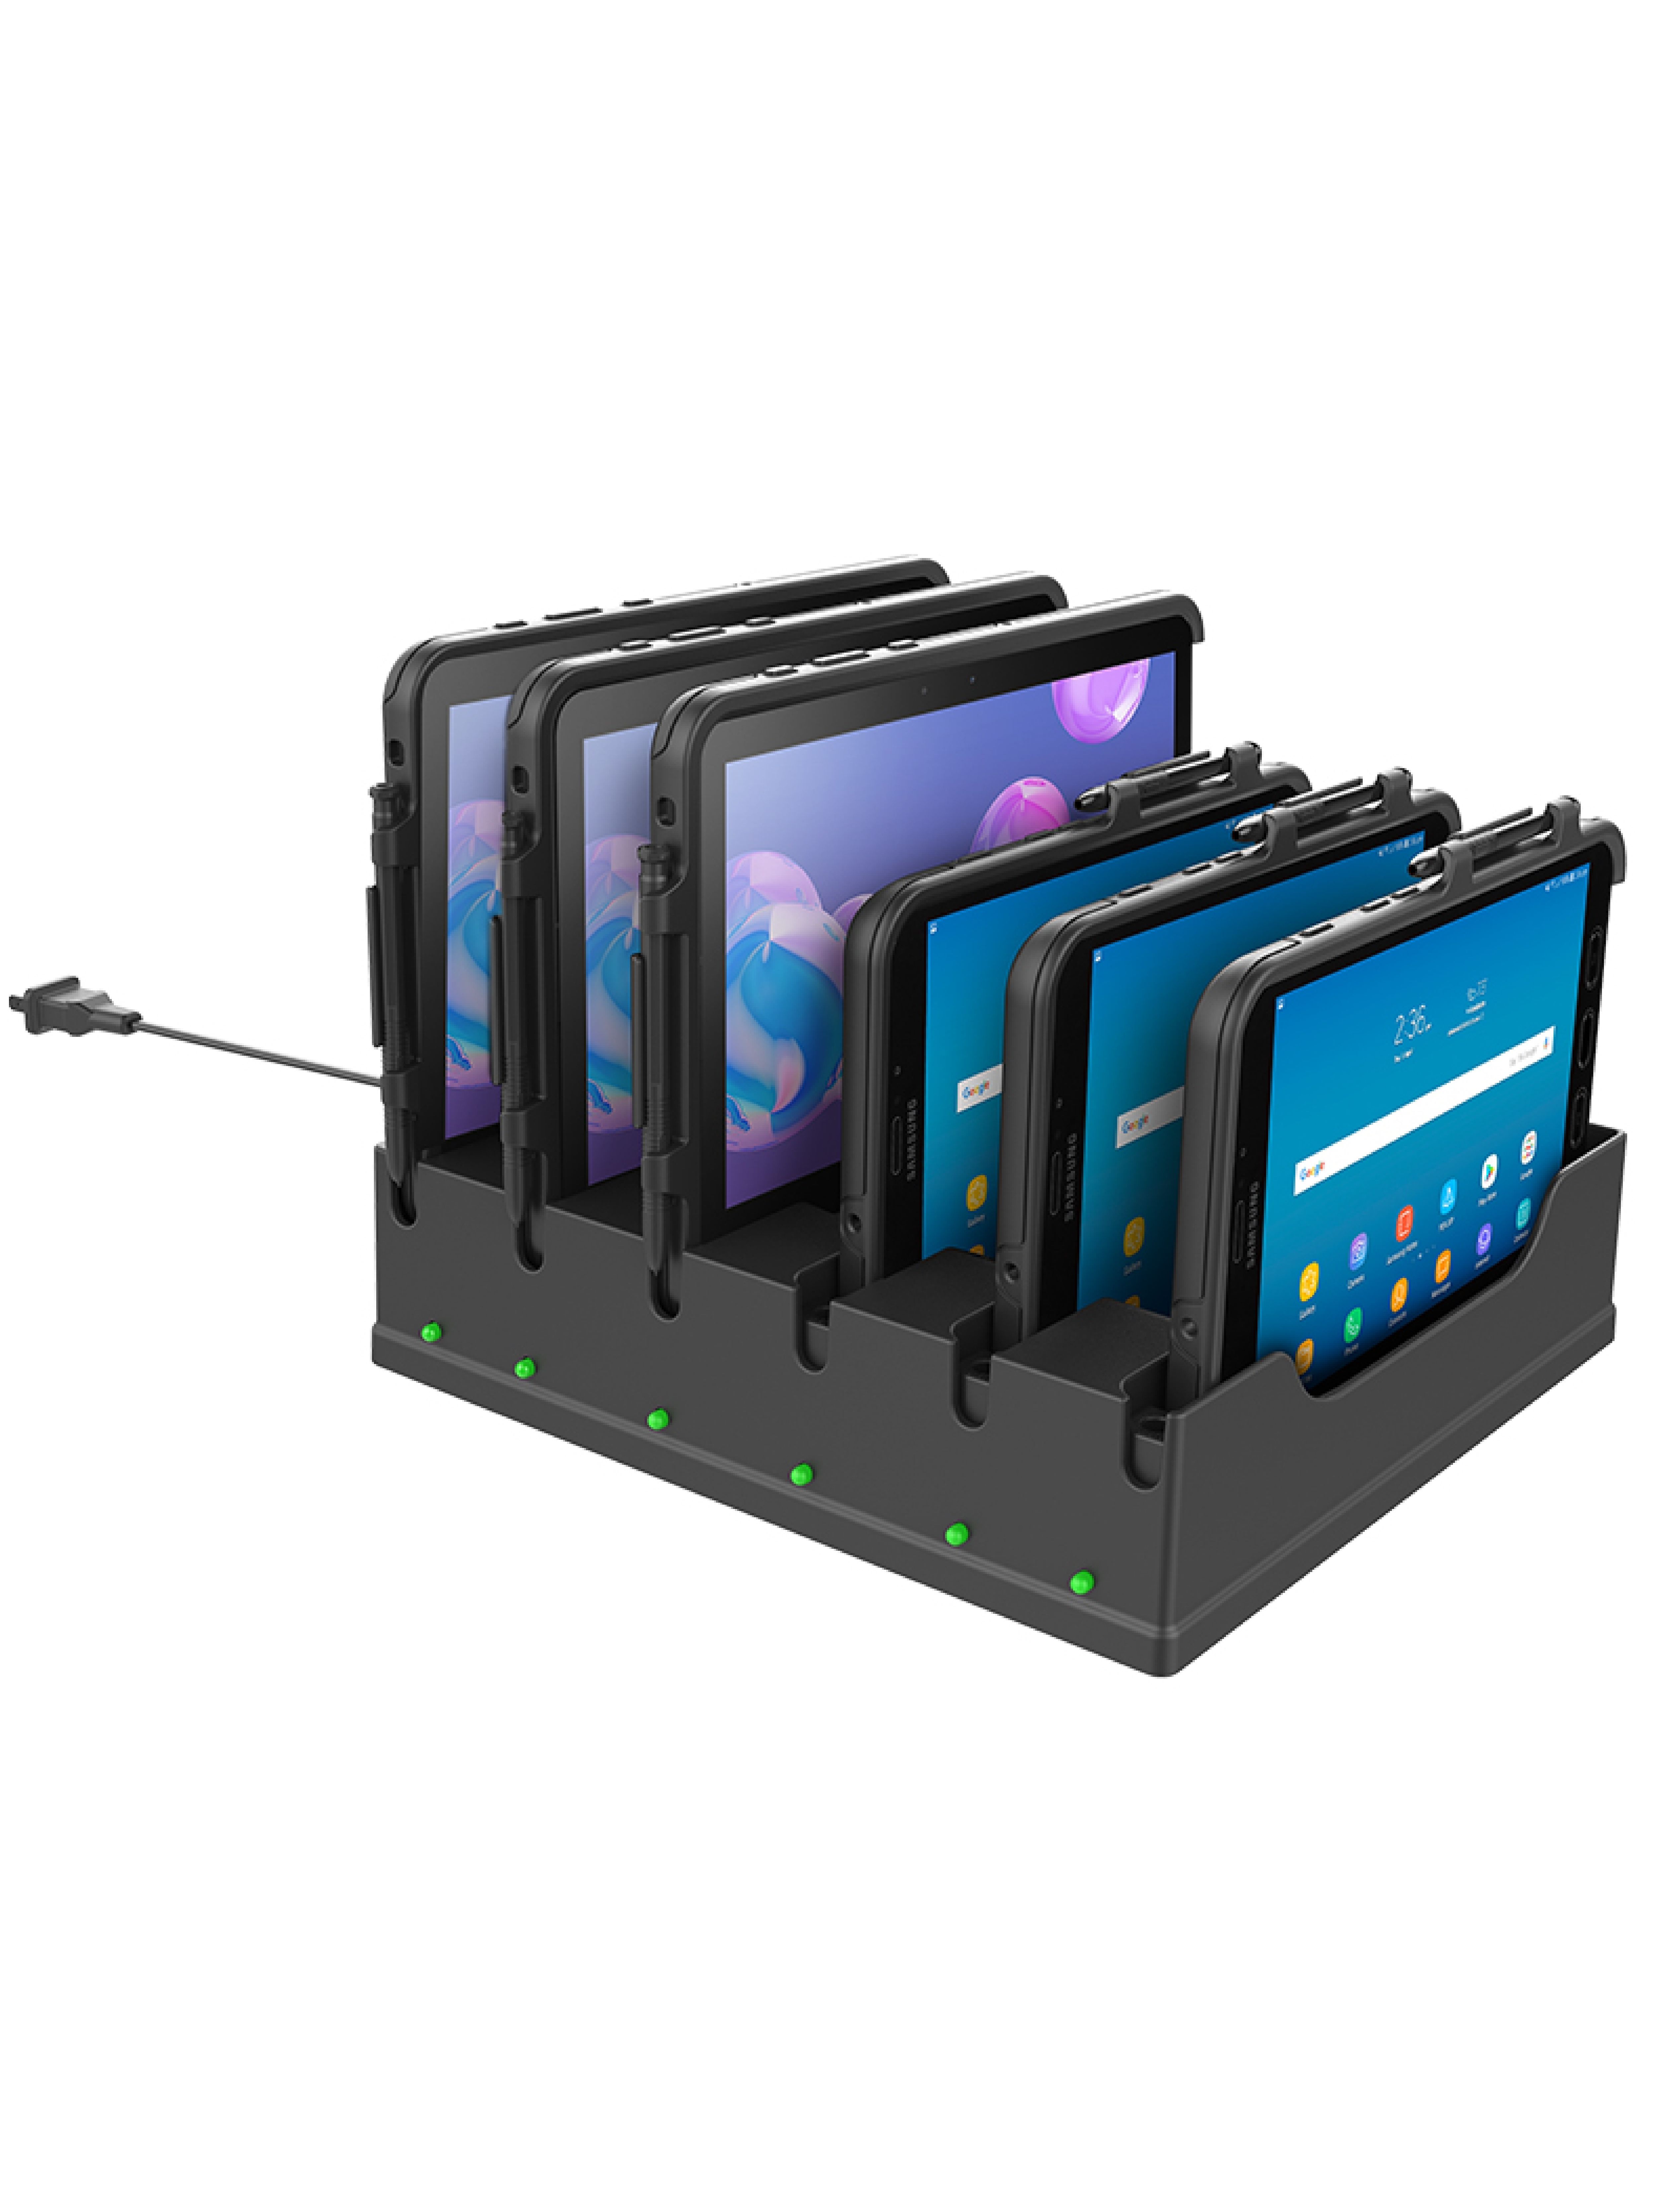 RAM Mounts 6-fach Tisch-Ladestation für Samsung Tab Active 3 / 2 / Pro in OtterBox uniVERSE Gehäusen